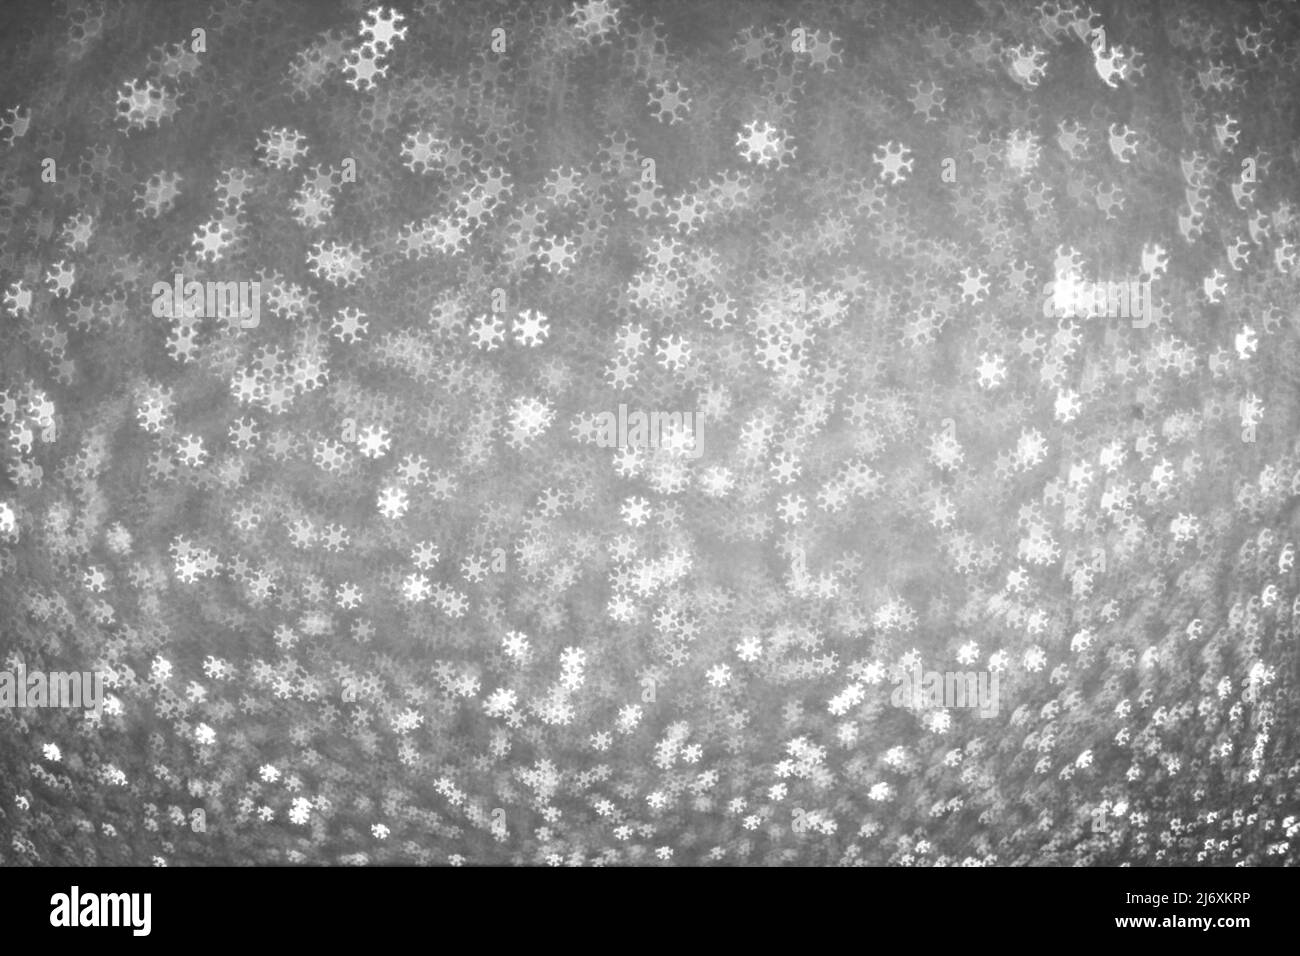 Le bokeh blanc s'allume sous forme de flocons de neige sur fond gris argenté. Arrière-plan de Noël d'hiver Banque D'Images